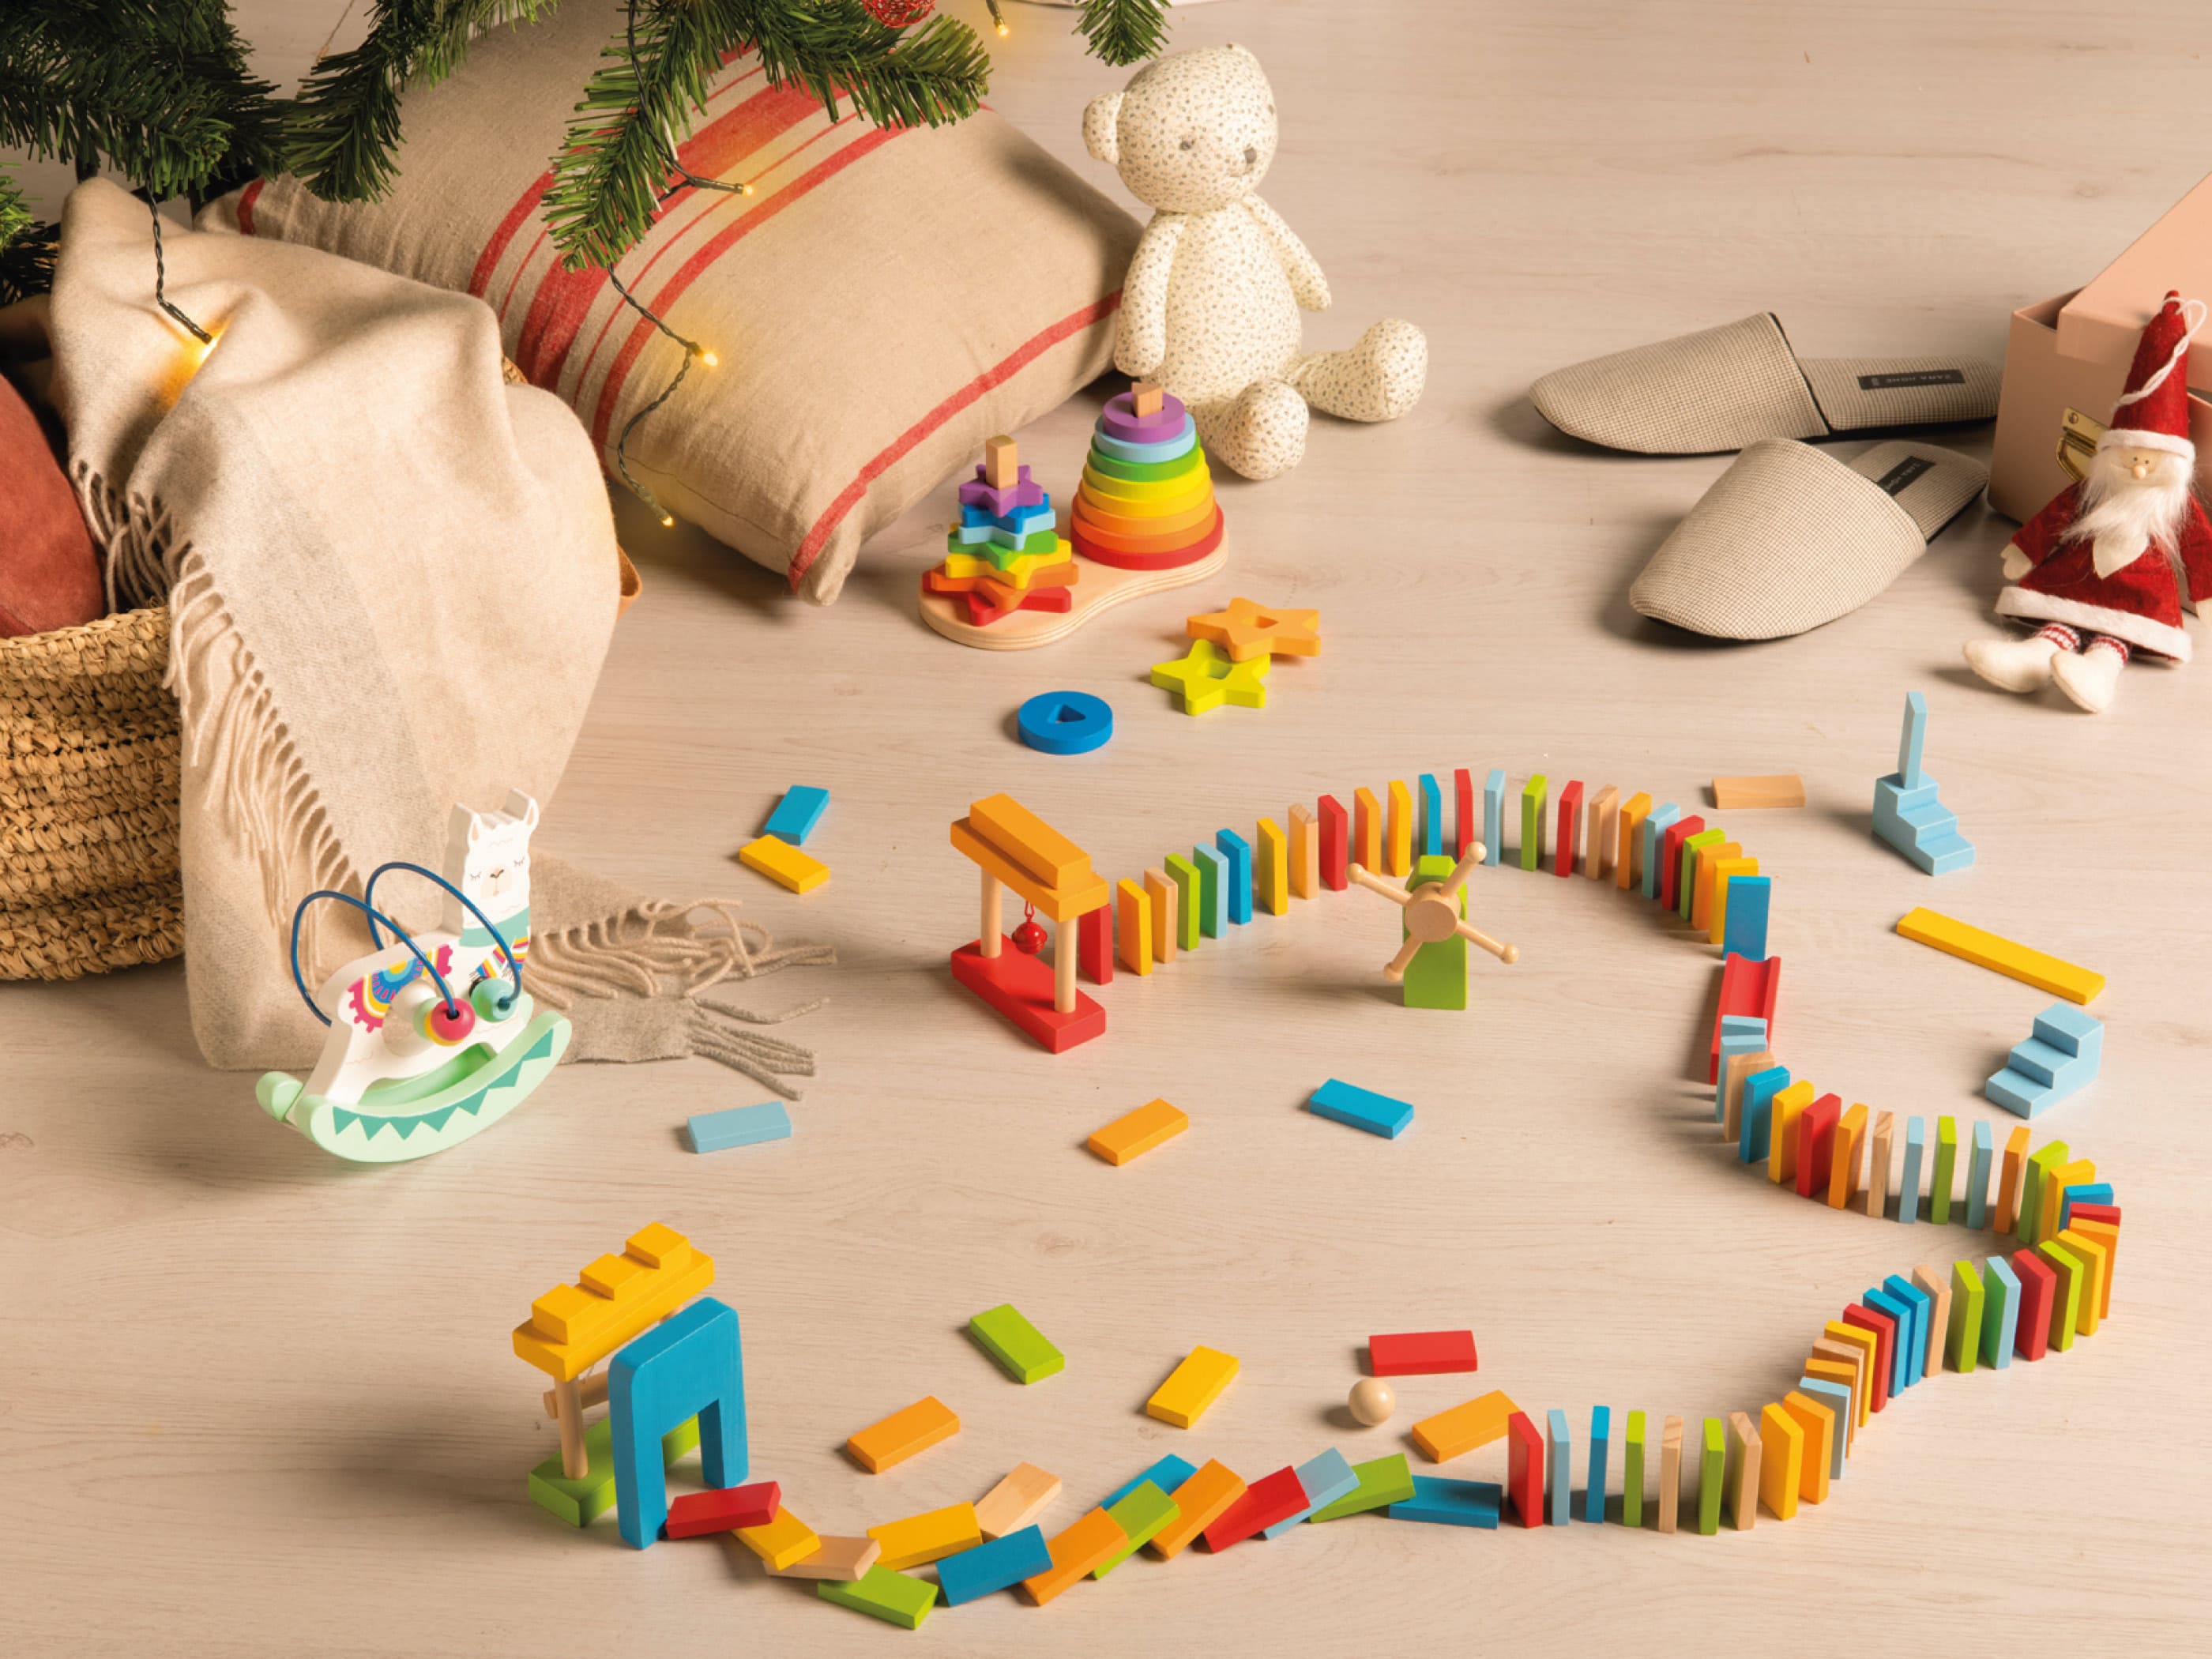 Puzles, juegos simbólicos y juguetes madera, los preferidos de los niños | ALDI Supermercados